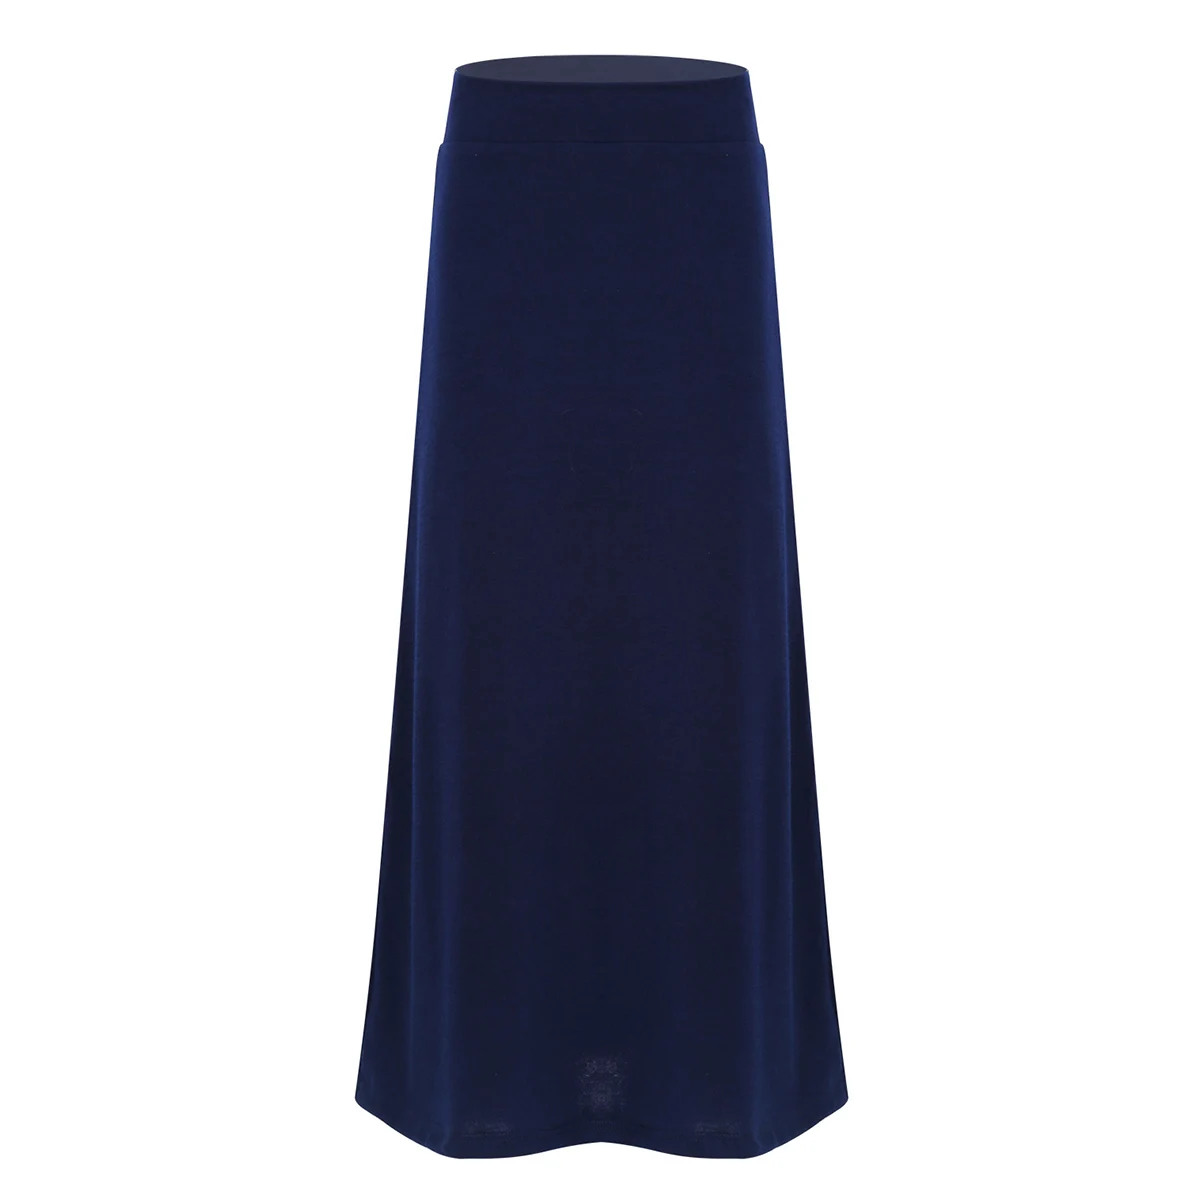 IEFiEL/однотонная длинная юбка-макси для маленьких девочек эластичная легкая повседневная юбка-макси для школы, вечерние юбки для девочек, SZ 6-14 - Цвет: Navy Blue